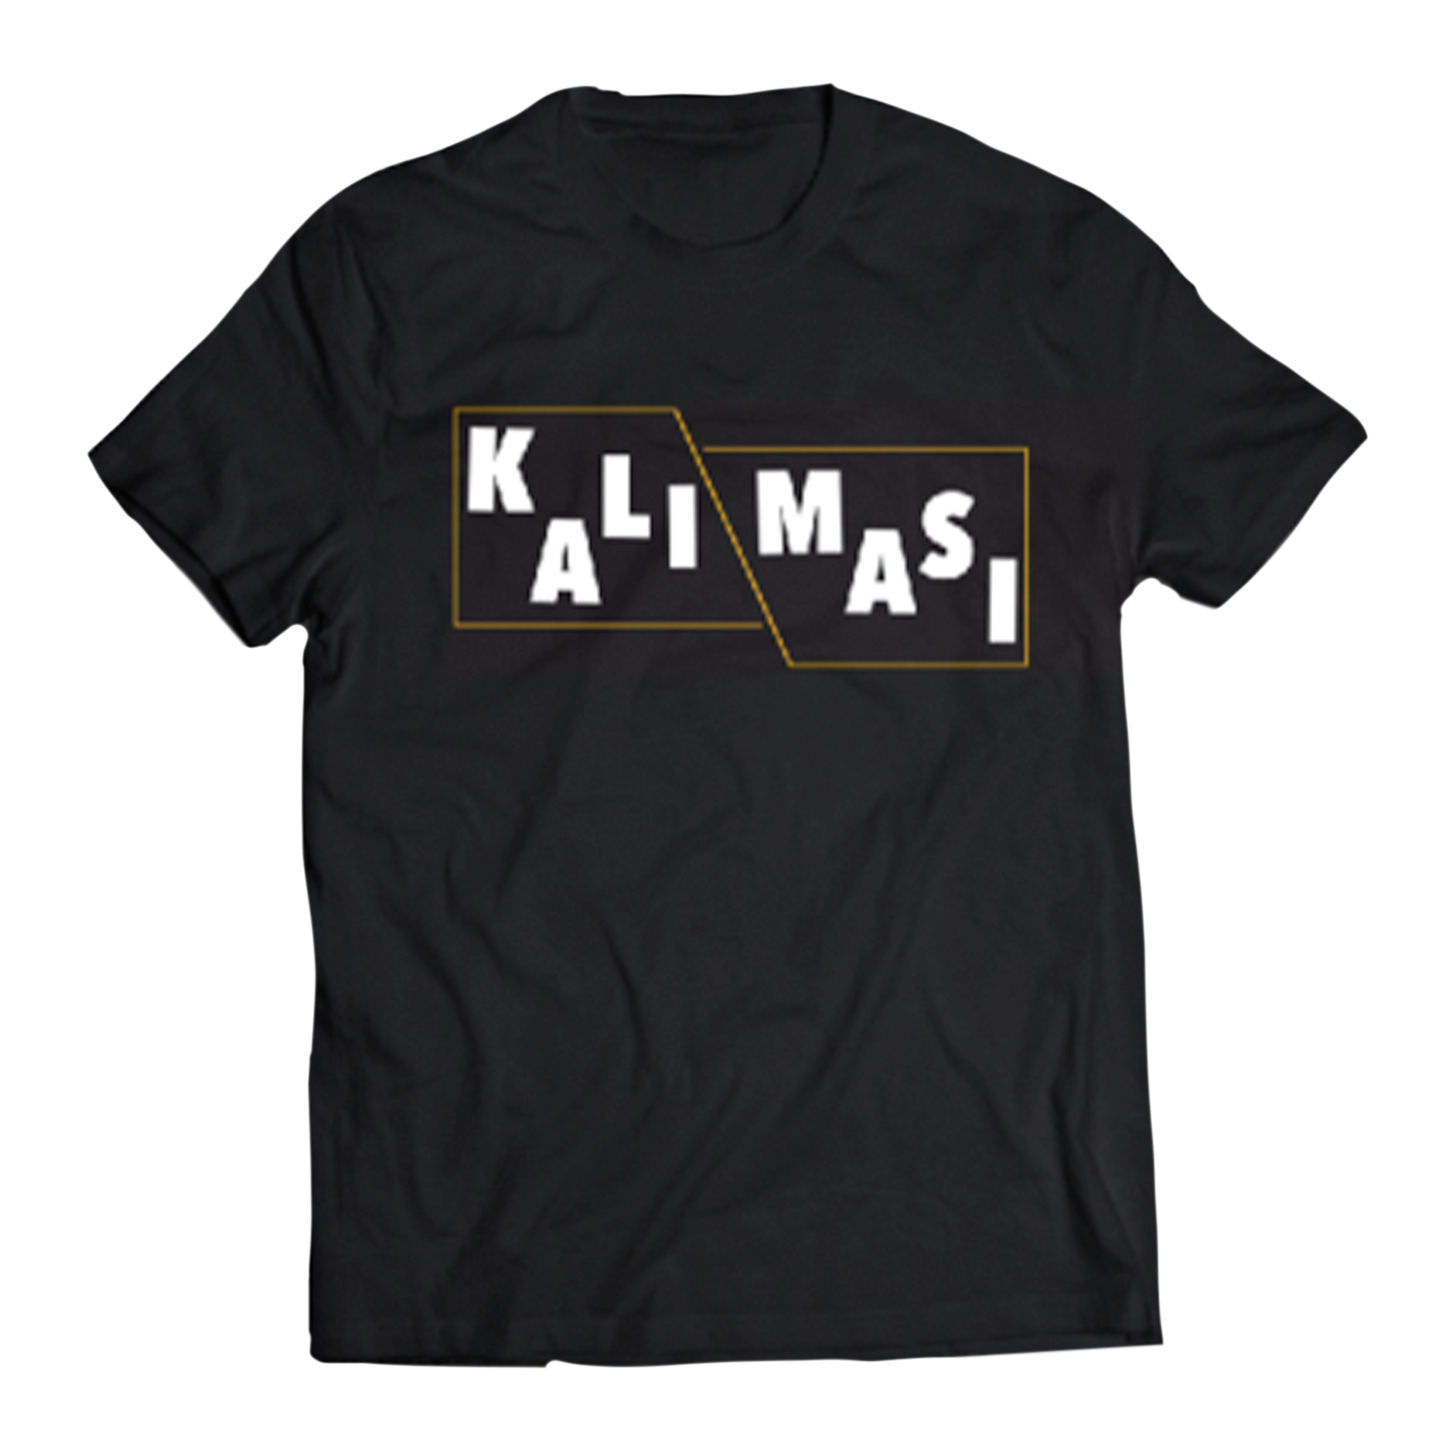 Kali Masi - "Logo" T-Shirt